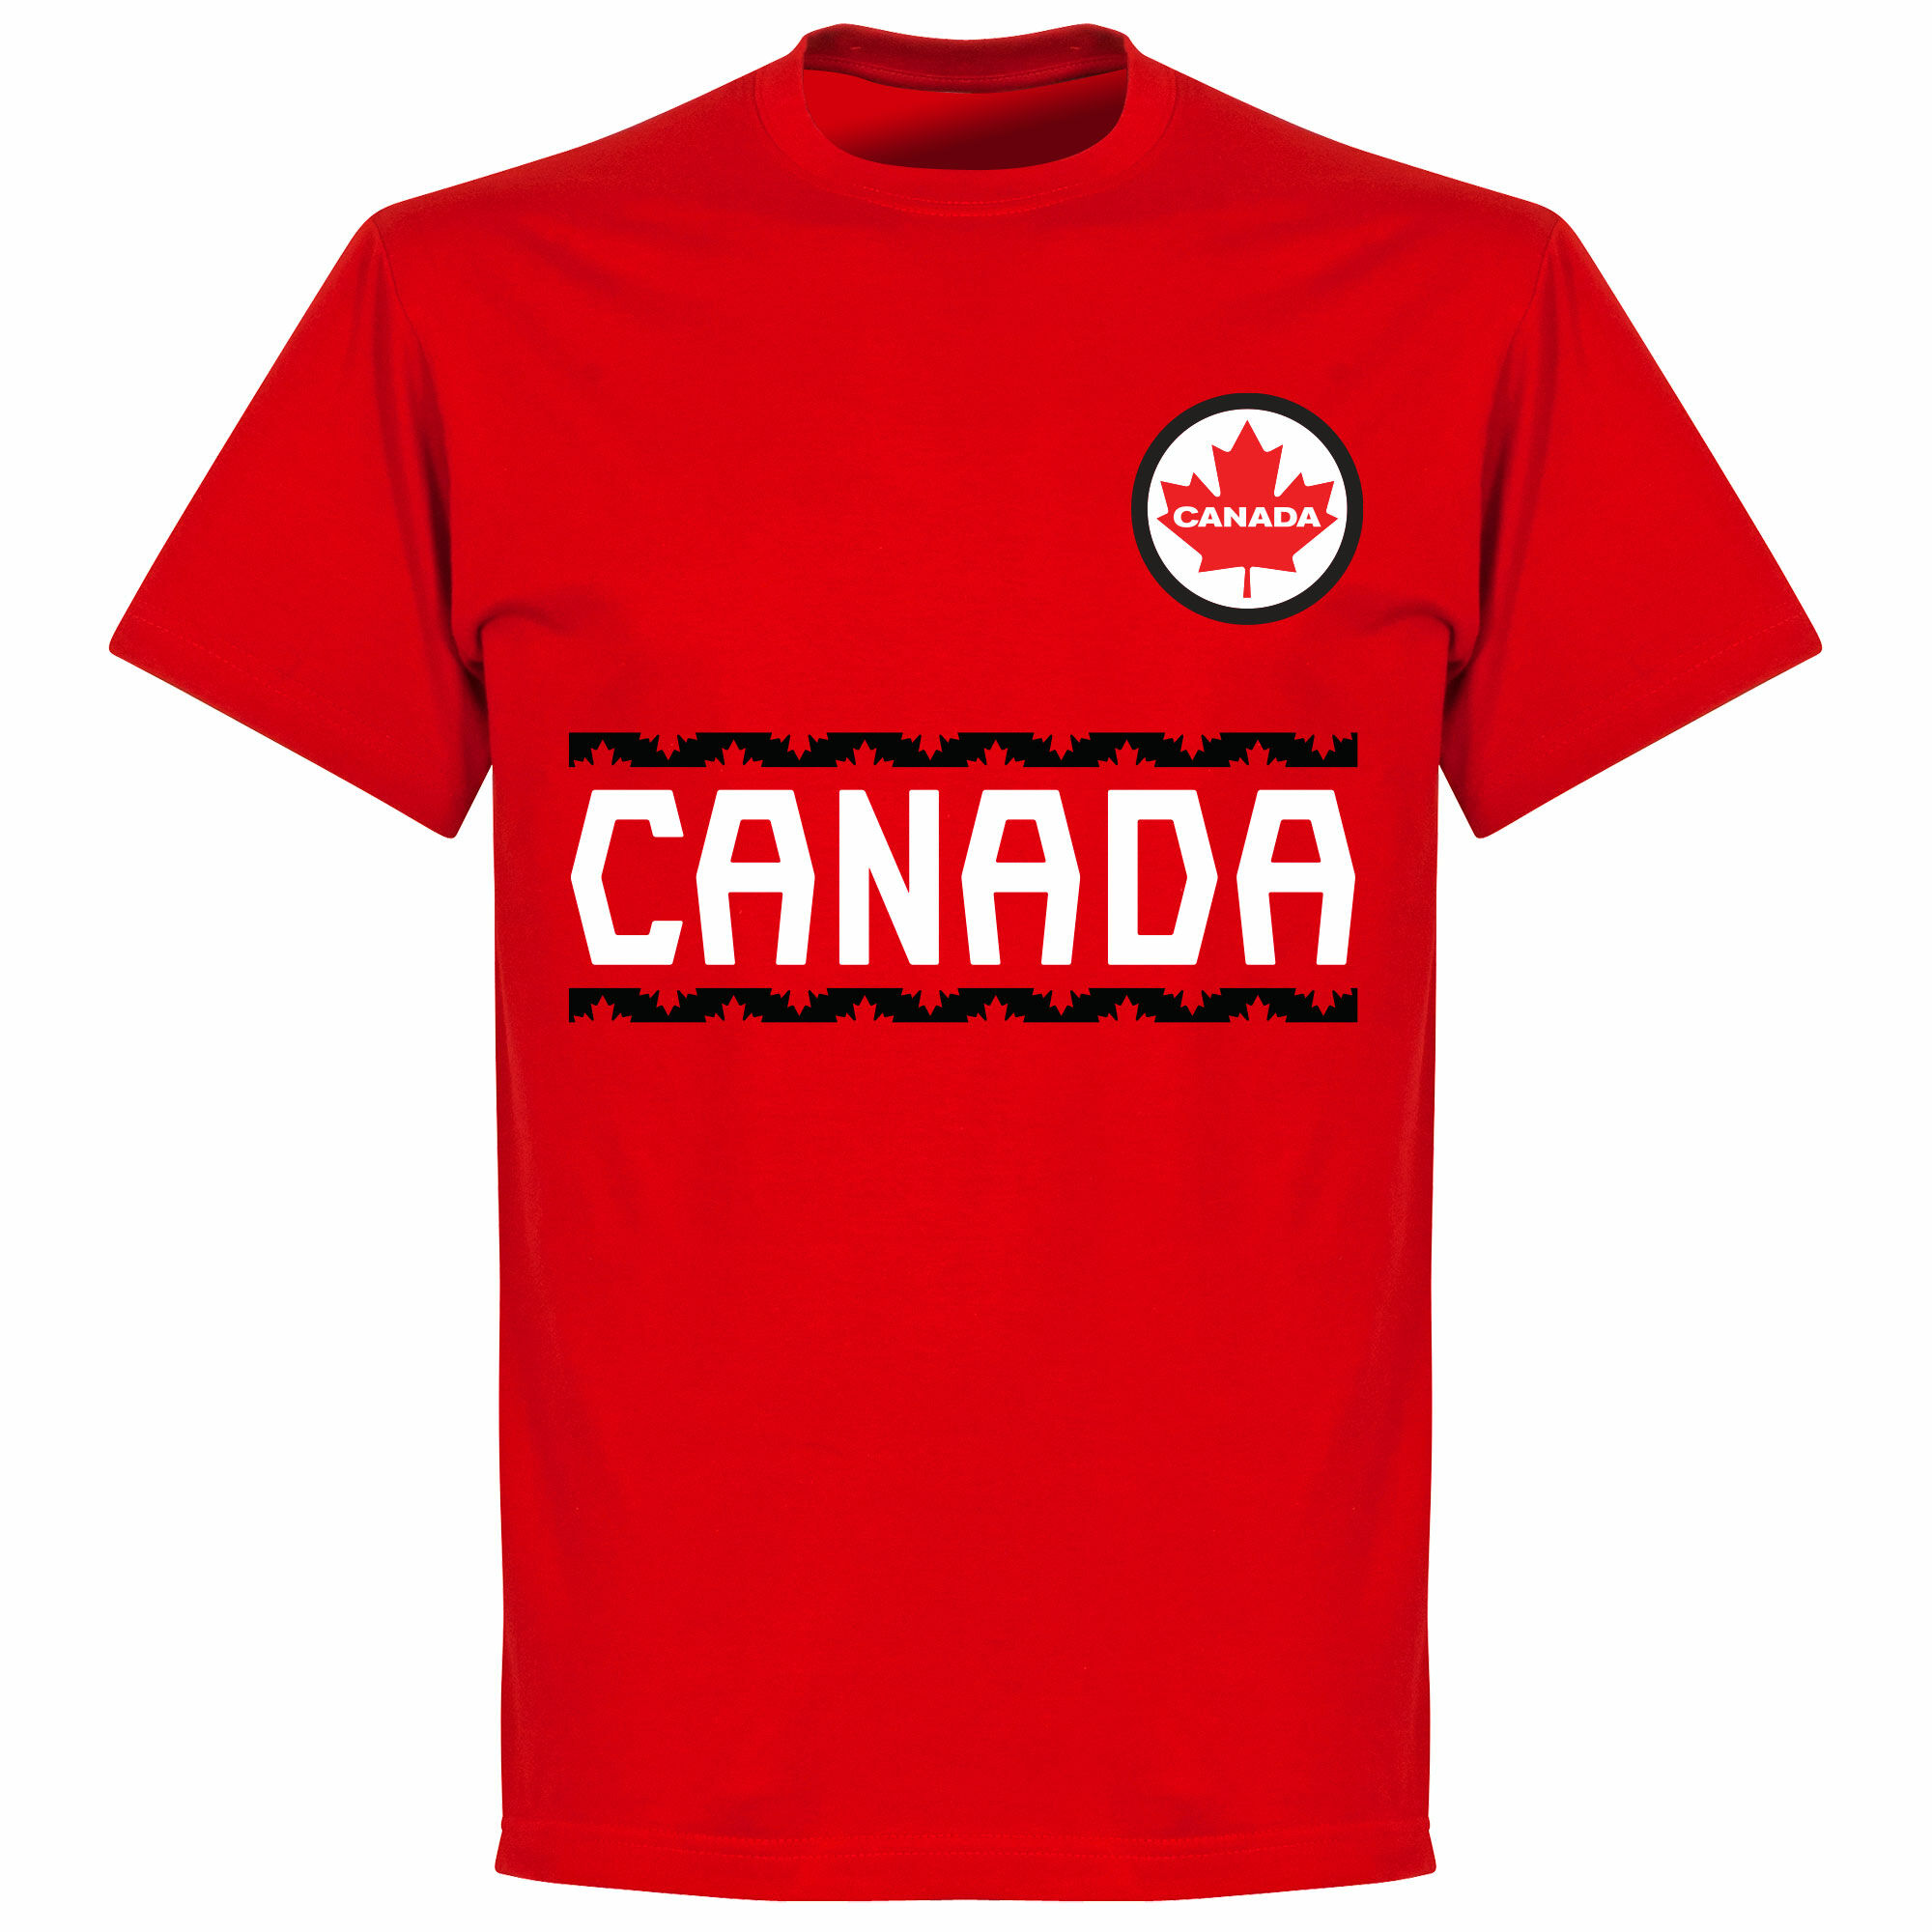 Kanada - Tričko dětské - červené